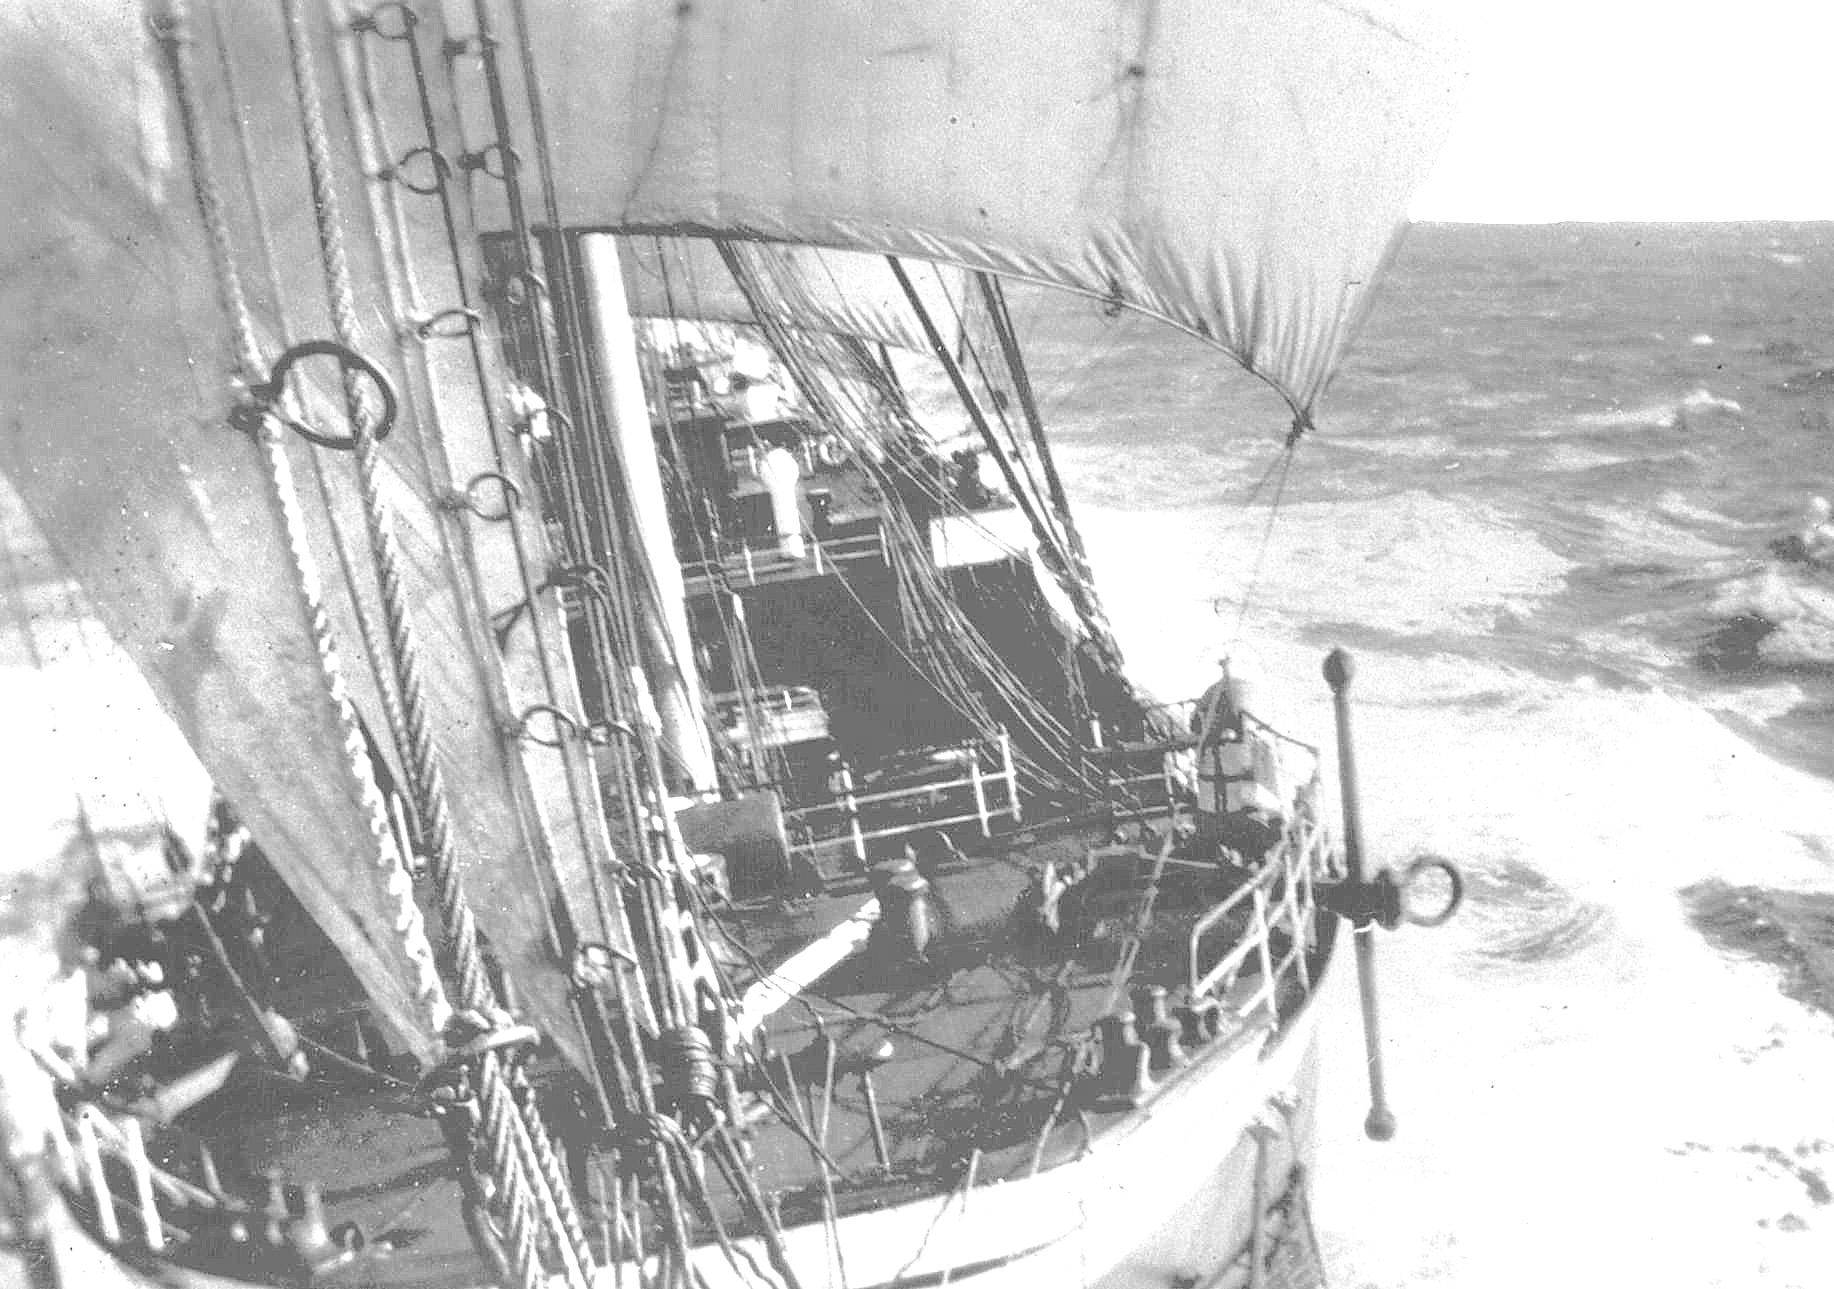 Rounding Cape Horn, 1932.